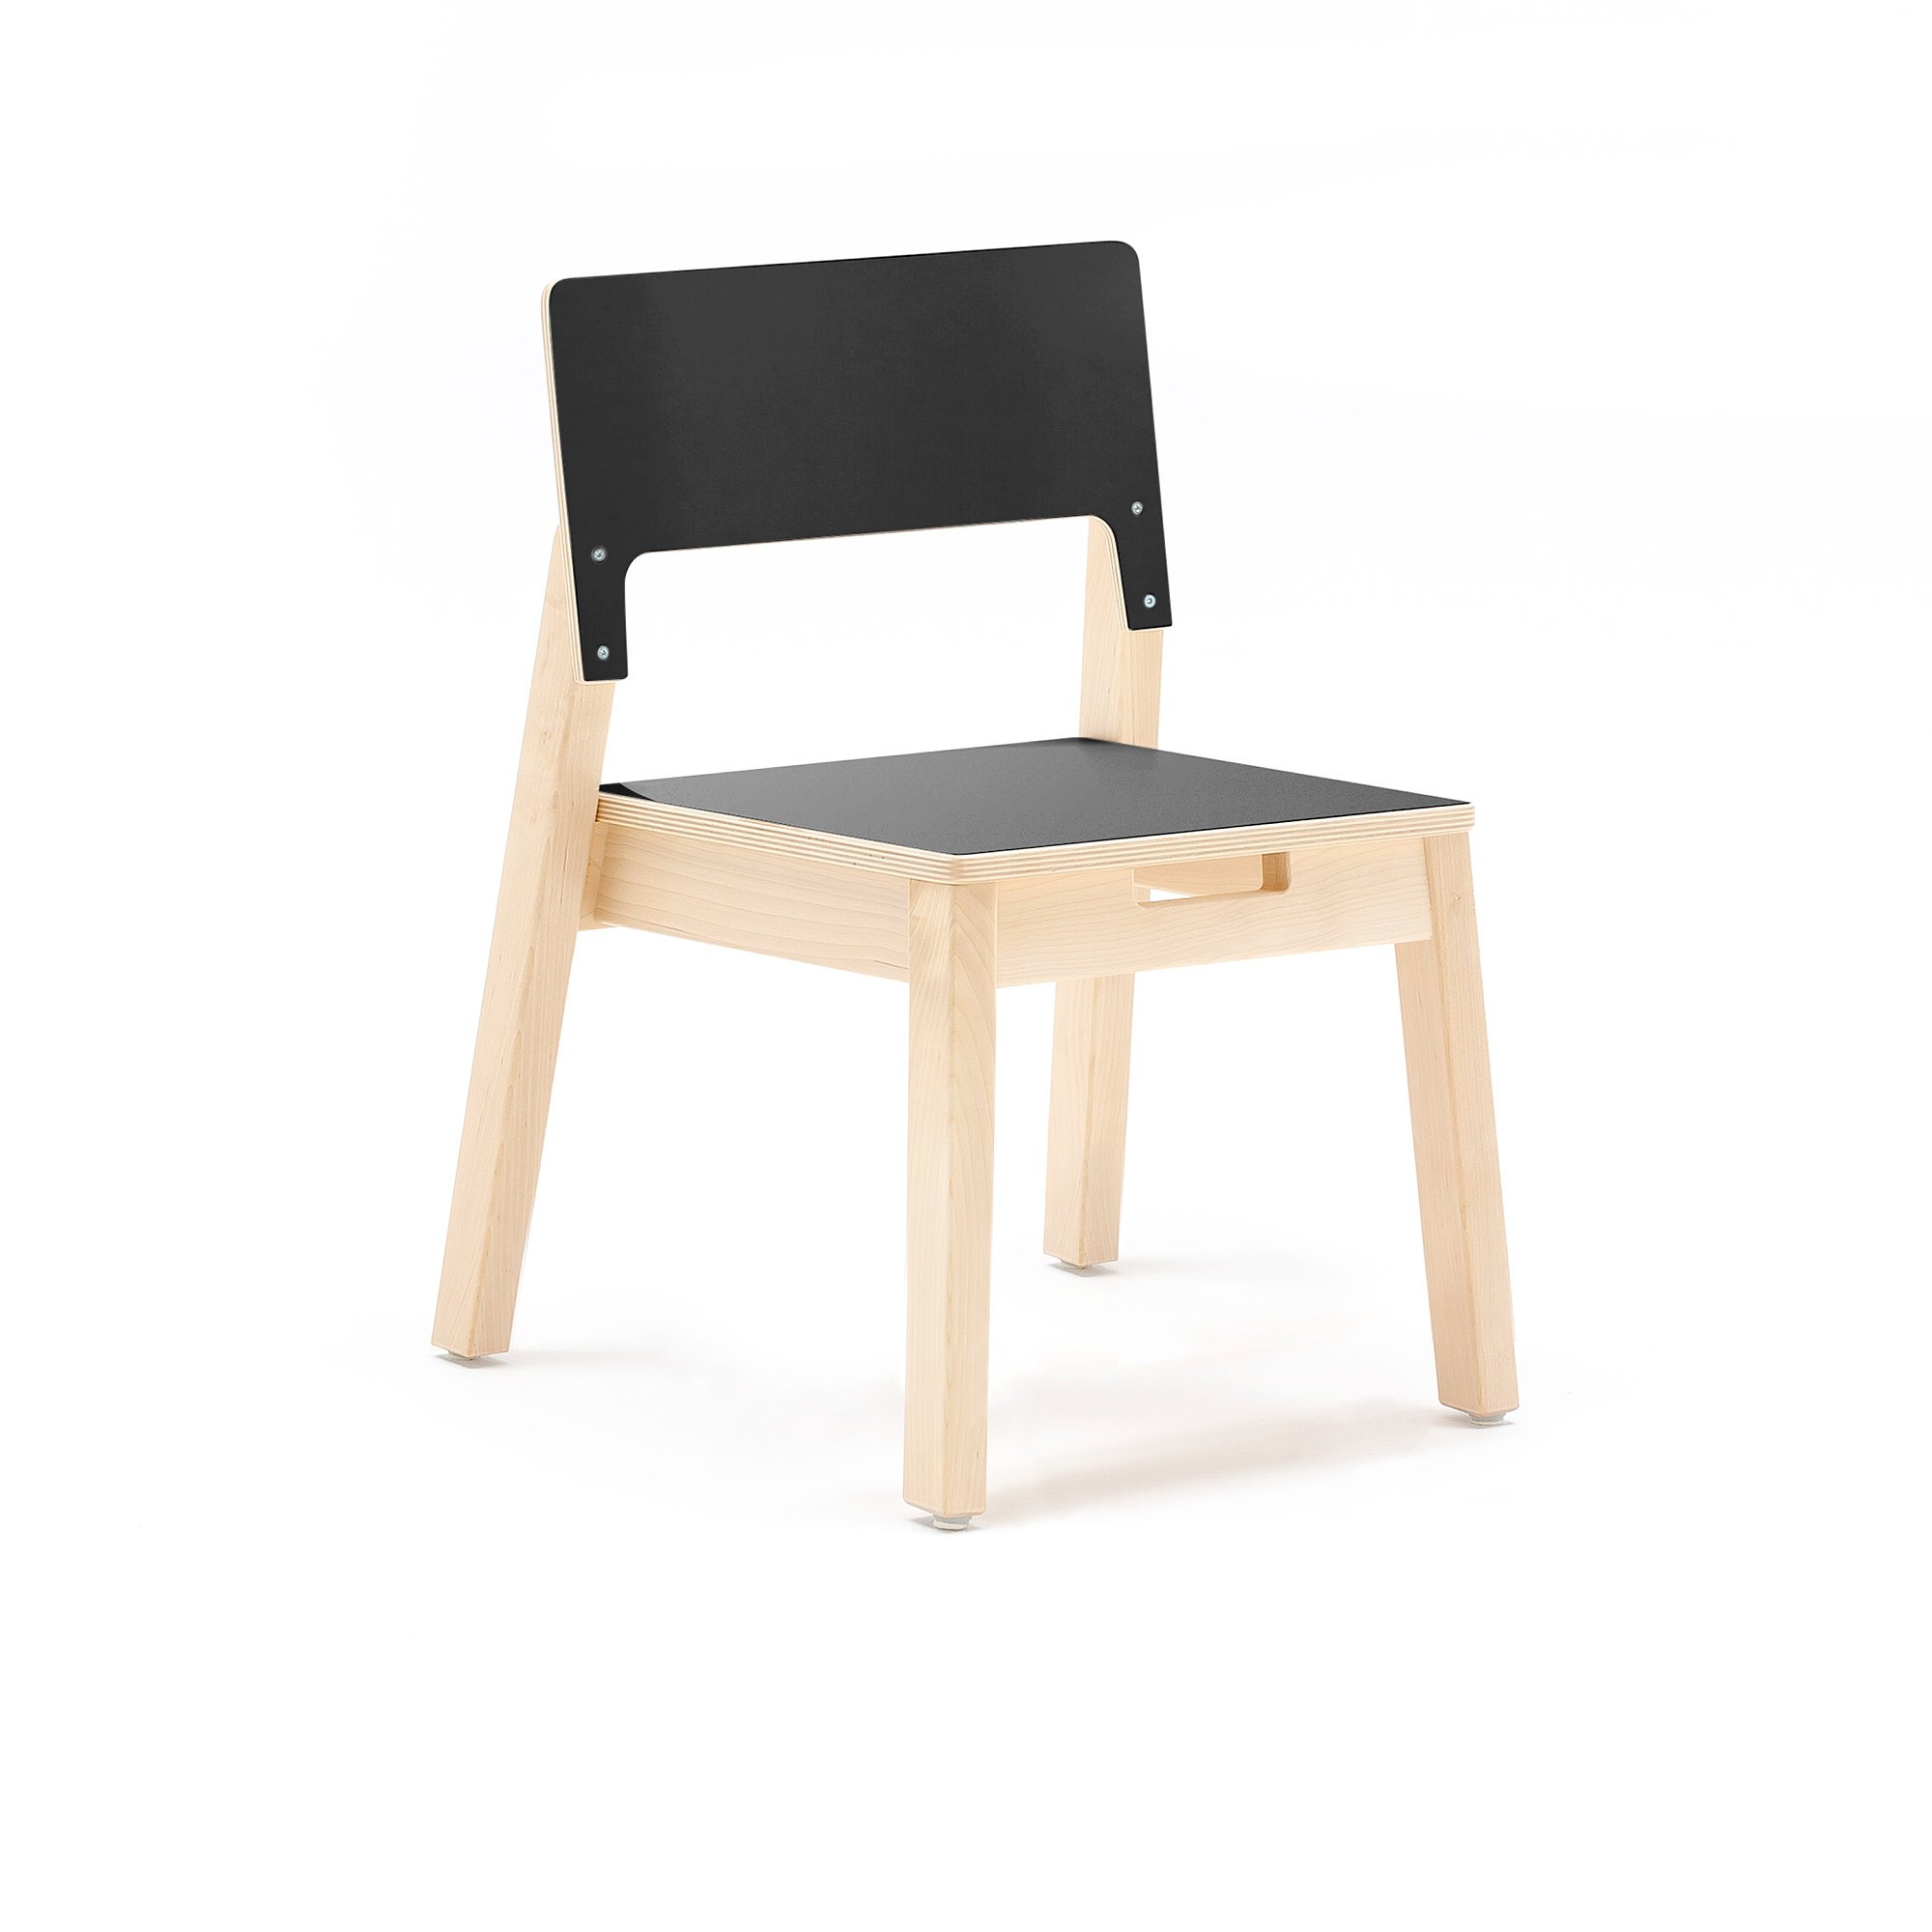 Children's chair LOVE, H 350 mm, birch, black laminate